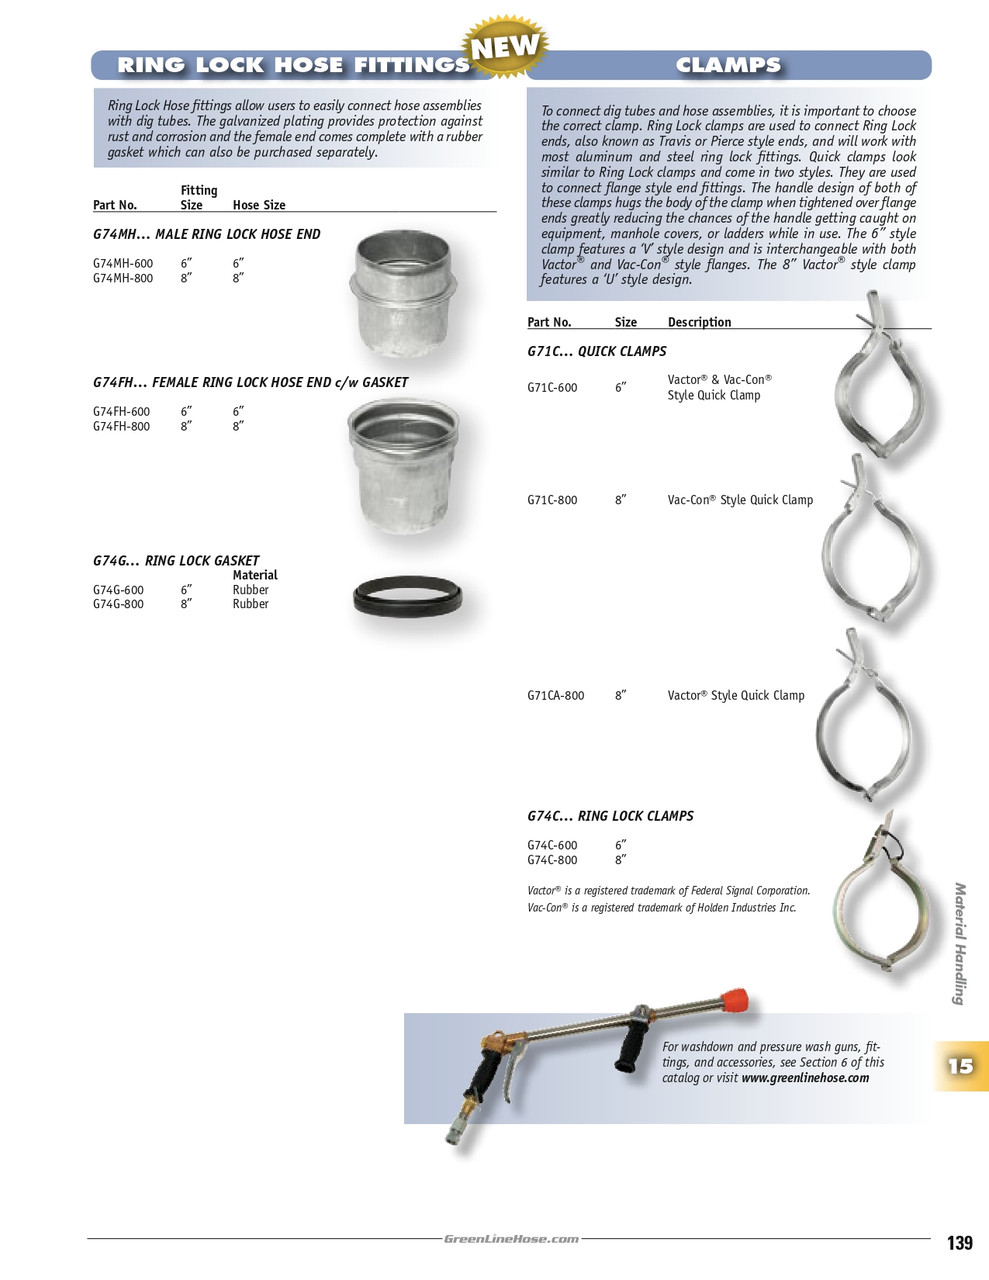 6 x 6" Female Ring Lock Hose End /w Gasket   G74FH-600